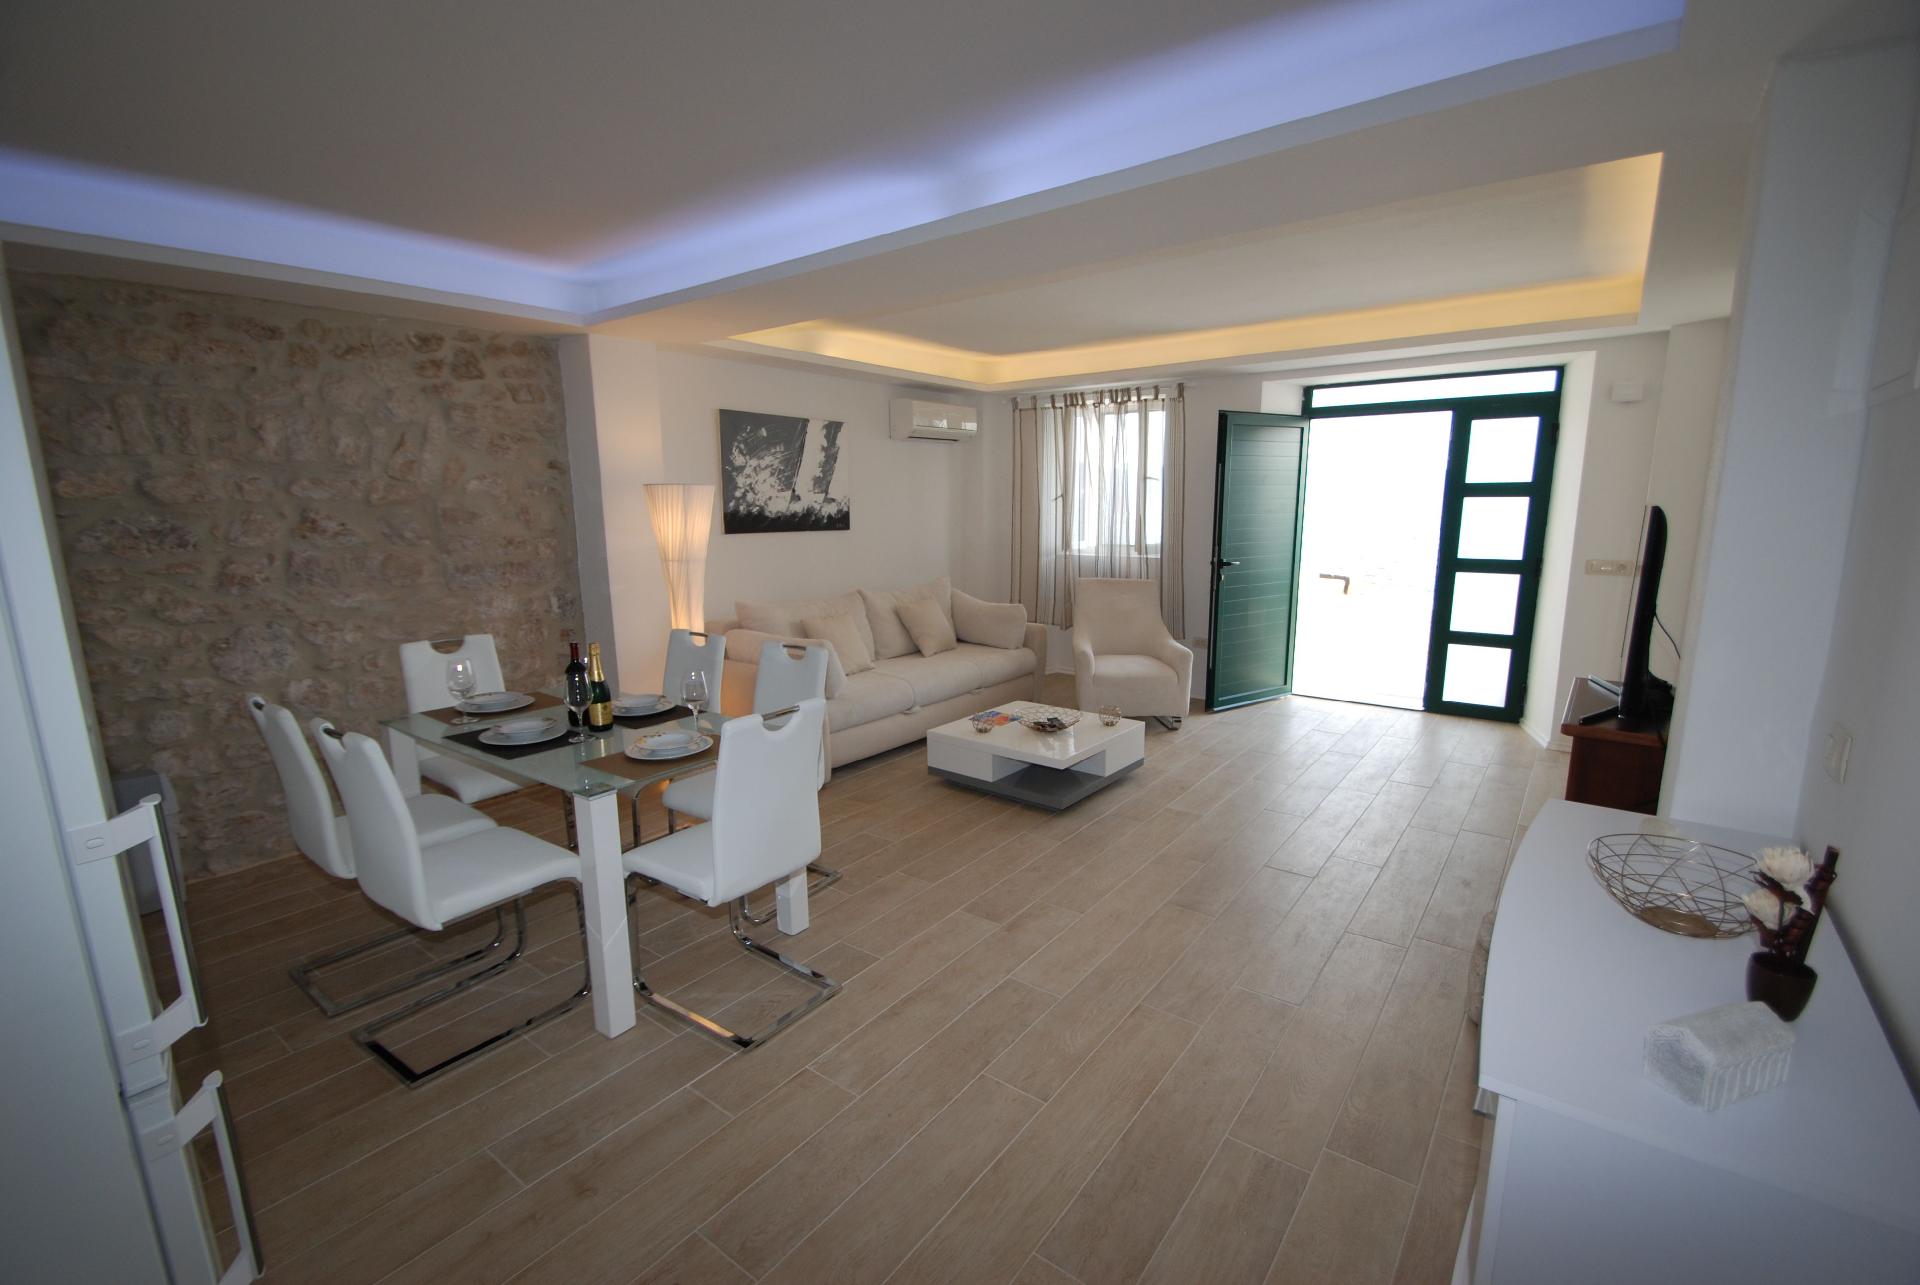 Ferienwohnung für 5 Personen ca. 80 m² i Ferienhaus in Kroatien